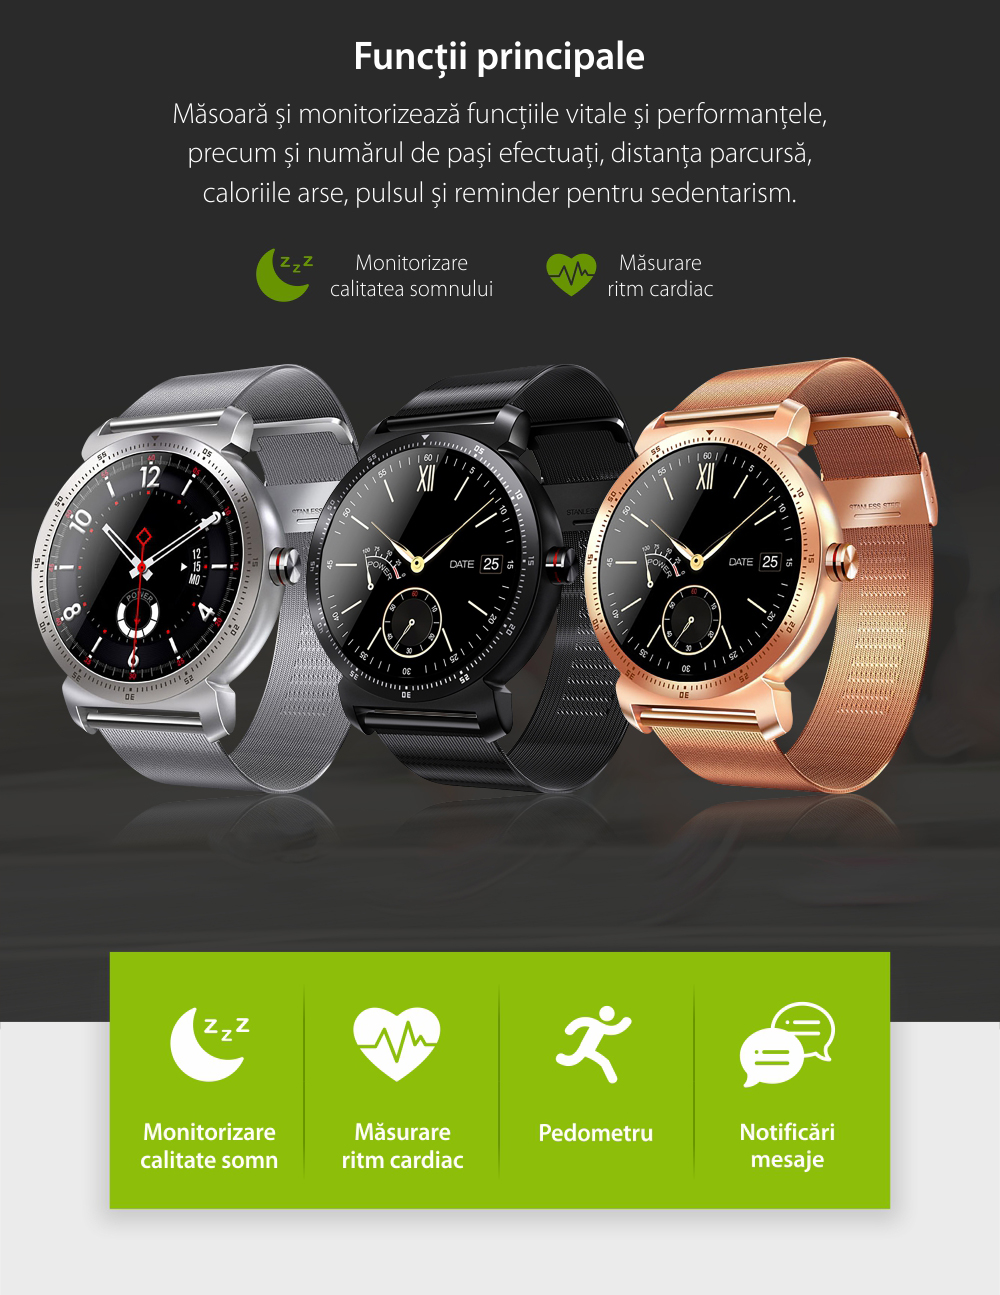 Ceas Smartwatch K88H Plus cu Functie Apelare prin Bluetooth, Senzor puls, Monitorizare somn, Notificari, Pedometru, Incarcare magnetica, Argintiu